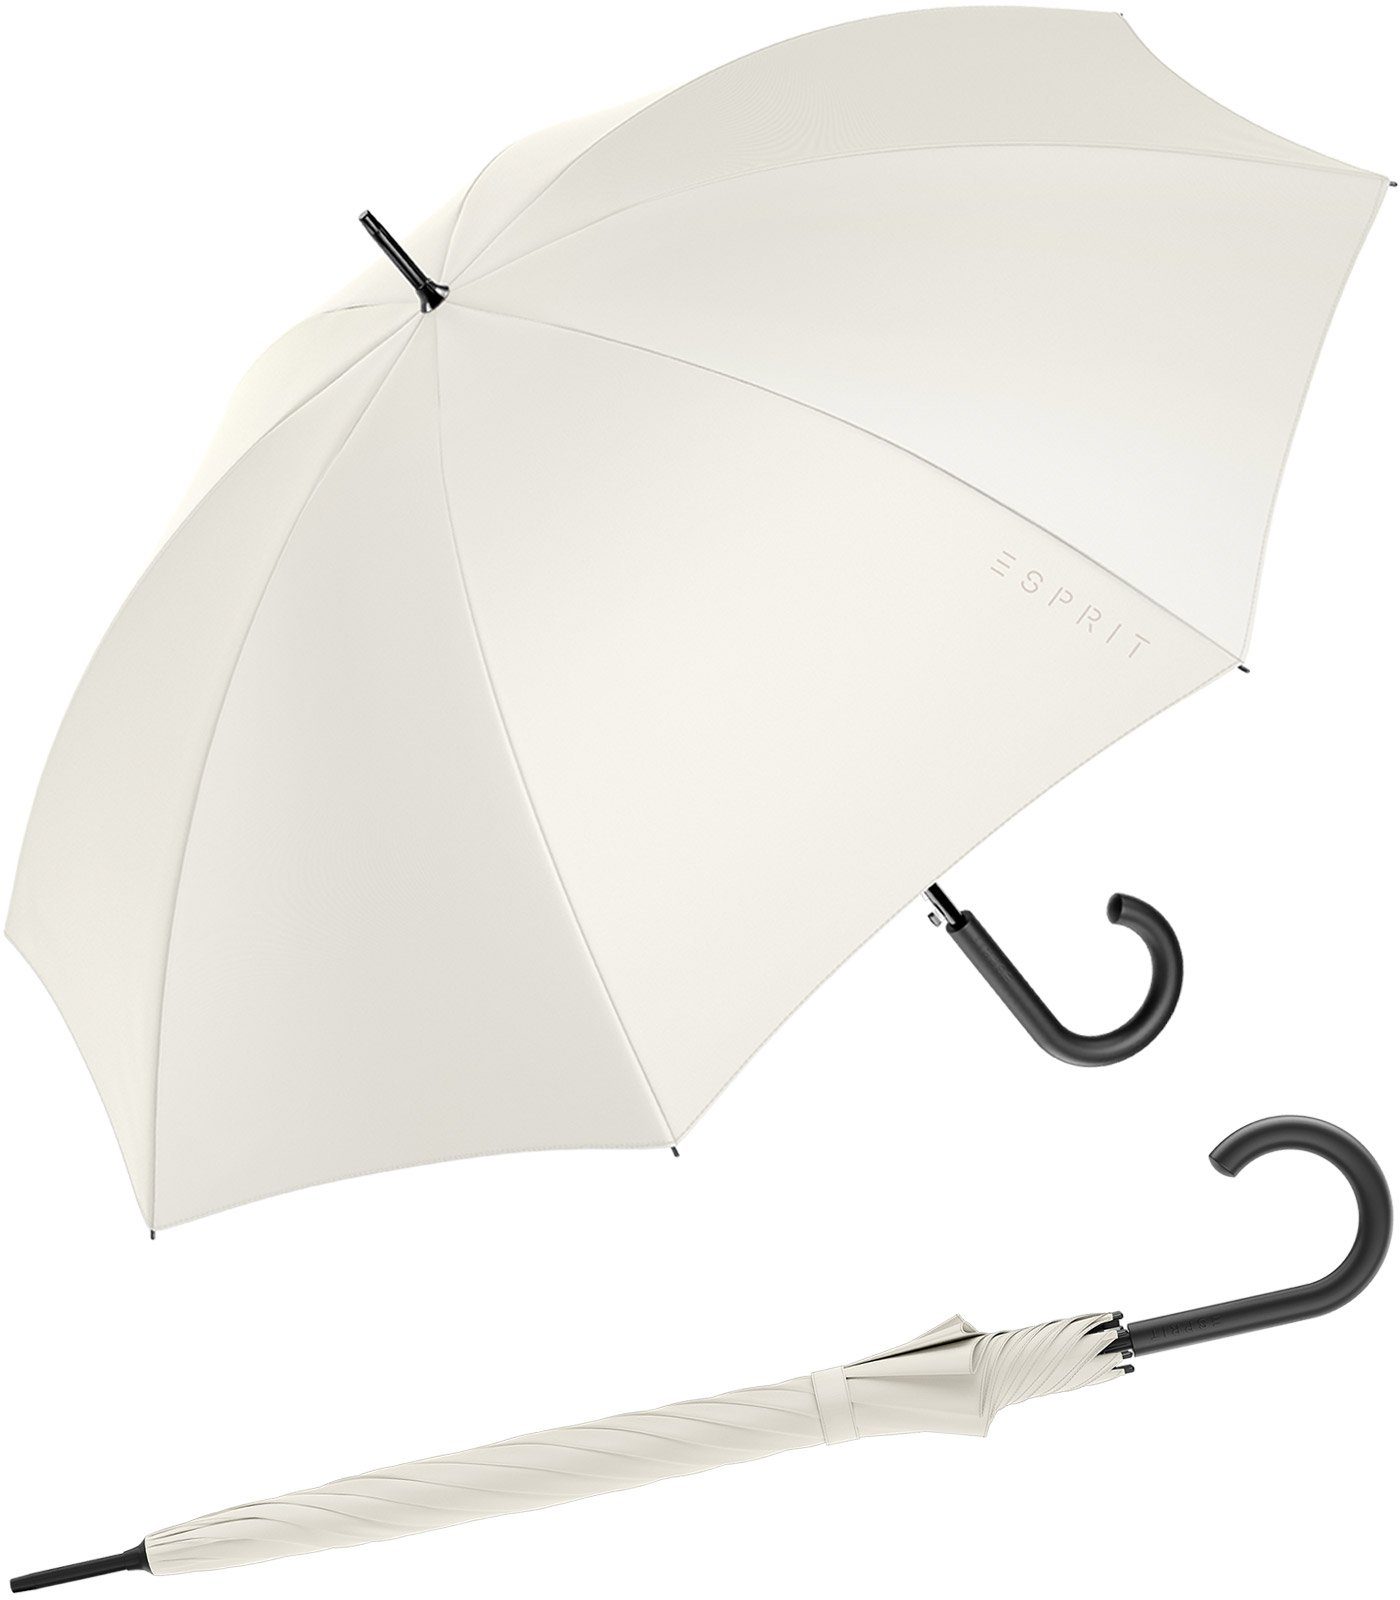 Esprit Stockregenschirm Damen-Regenschirm mit Automatik FJ 2022, groß und stabil, in den Trendfarben ivory